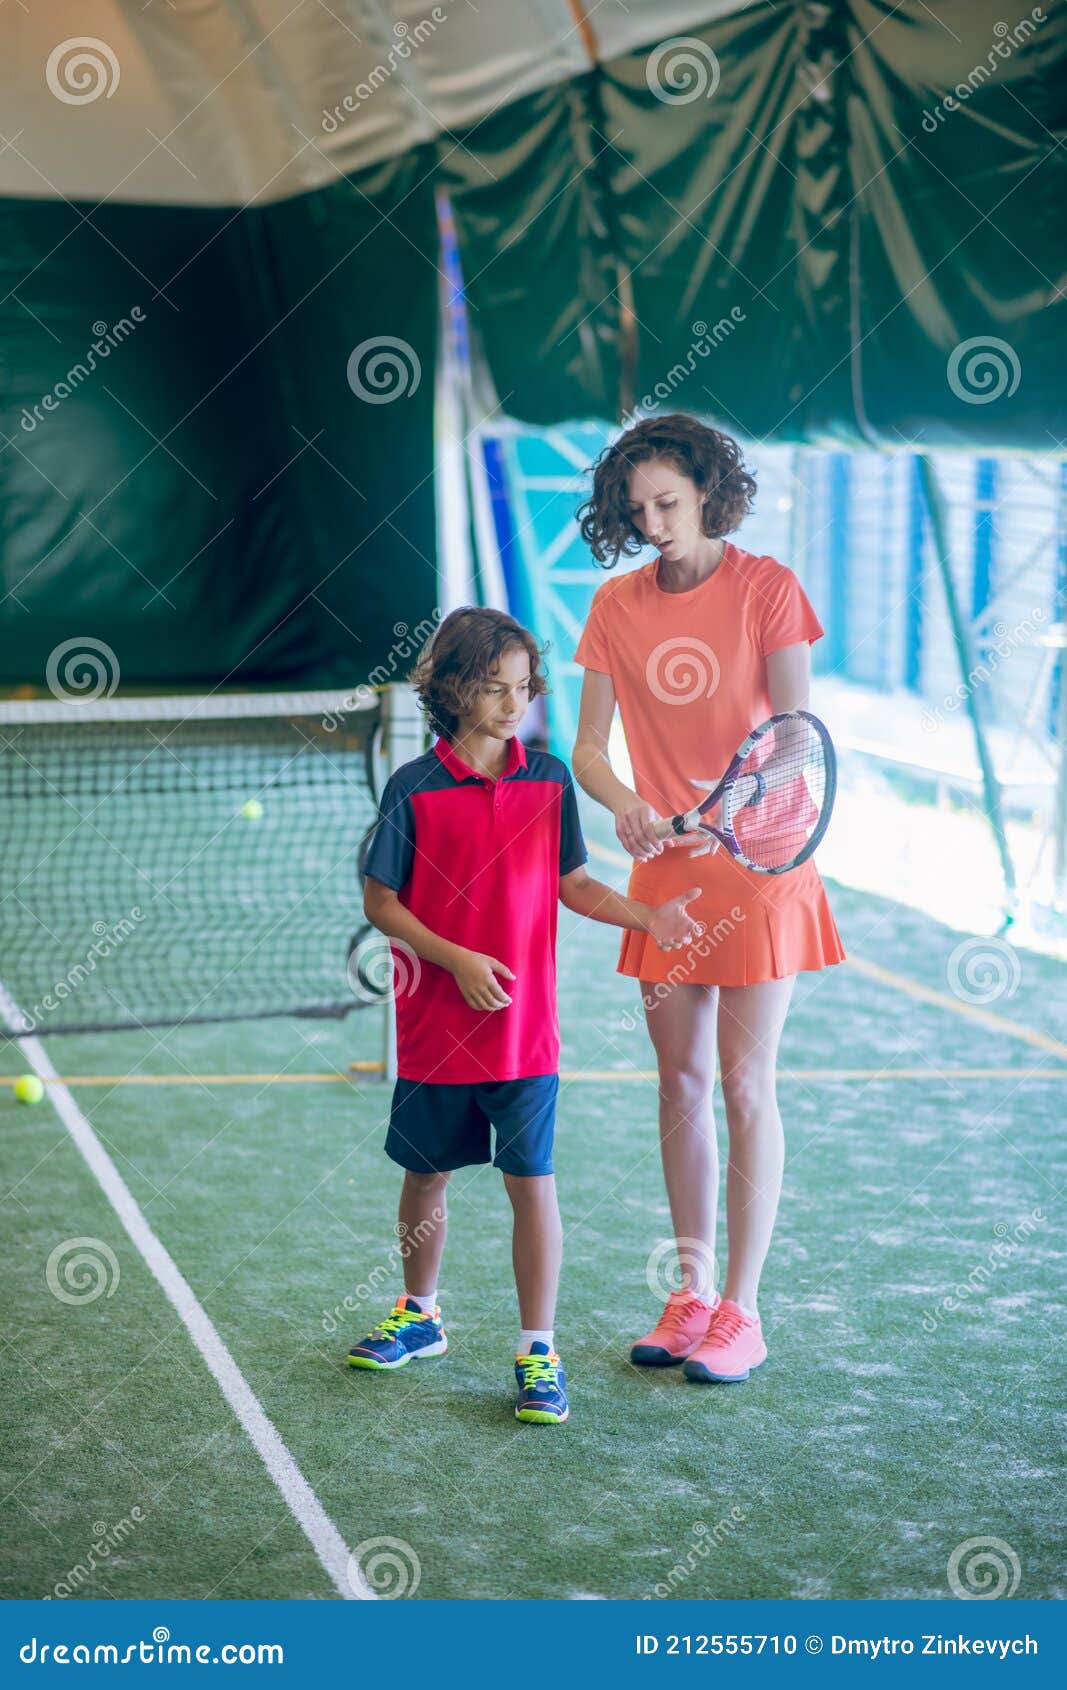 θηλυκό προπονητής με λαμπερά ρούχα μαθαίνει σε ένα αγόρι να κρατά μια  ρακέτα τένις Στοκ Εικόνες - εικόνα από lifestyle: 212555710